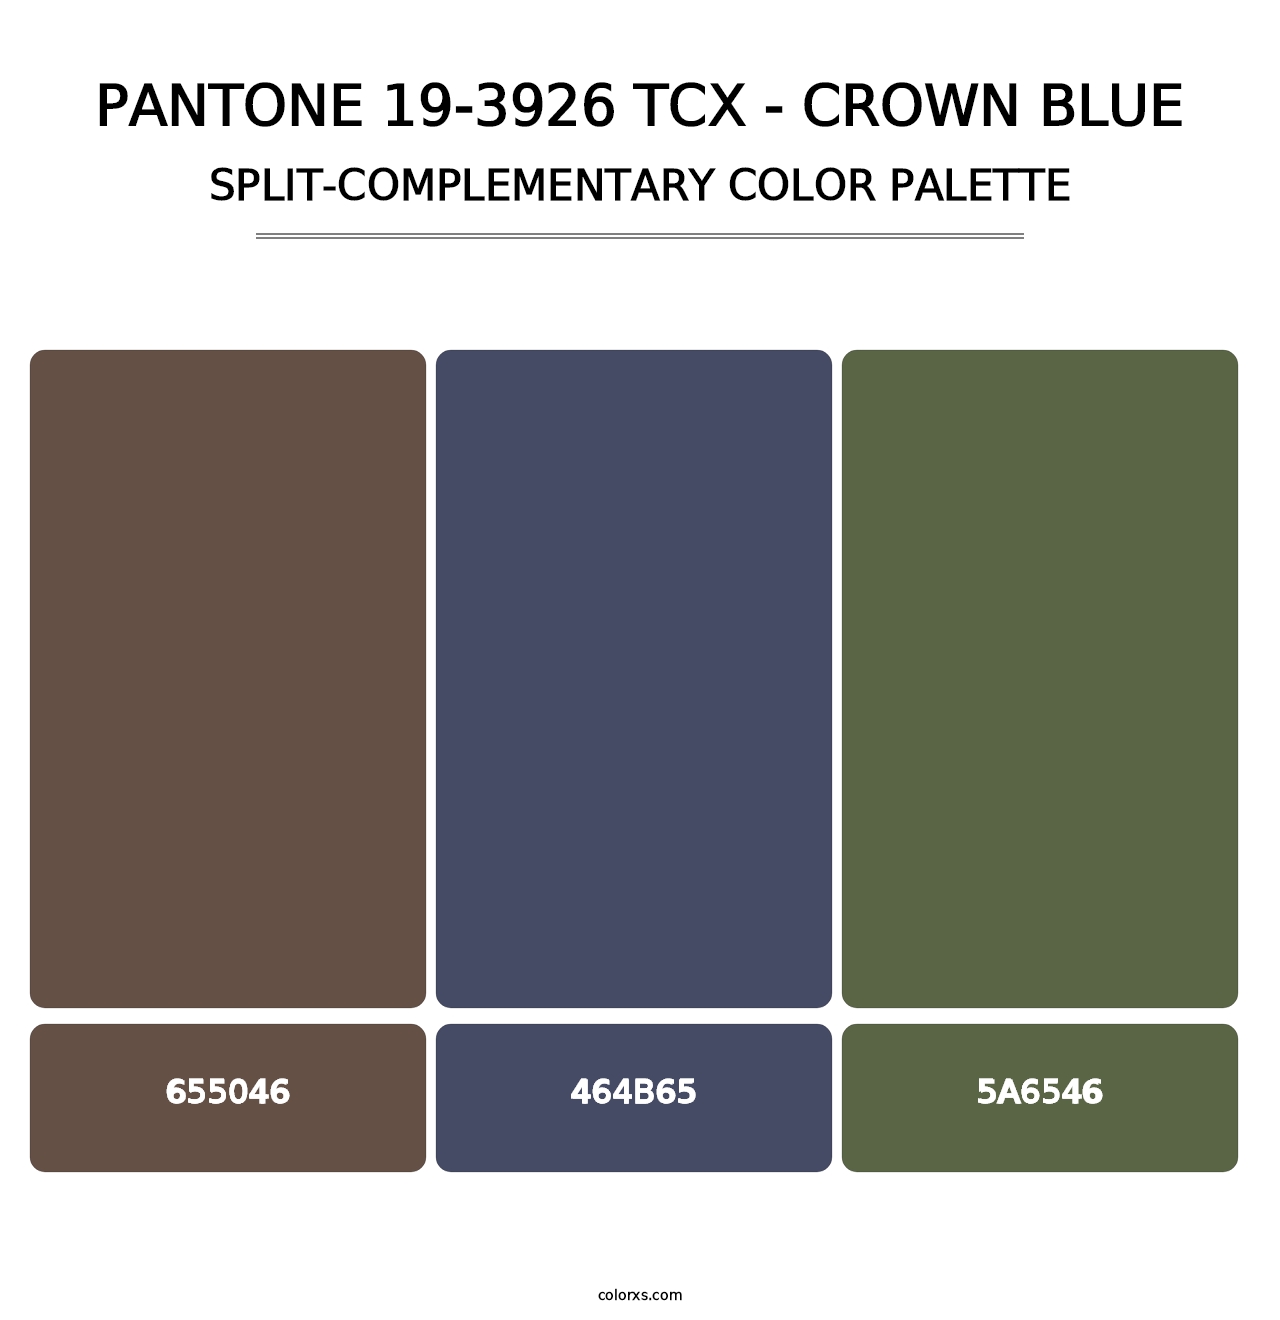 PANTONE 19-3926 TCX - Crown Blue - Split-Complementary Color Palette